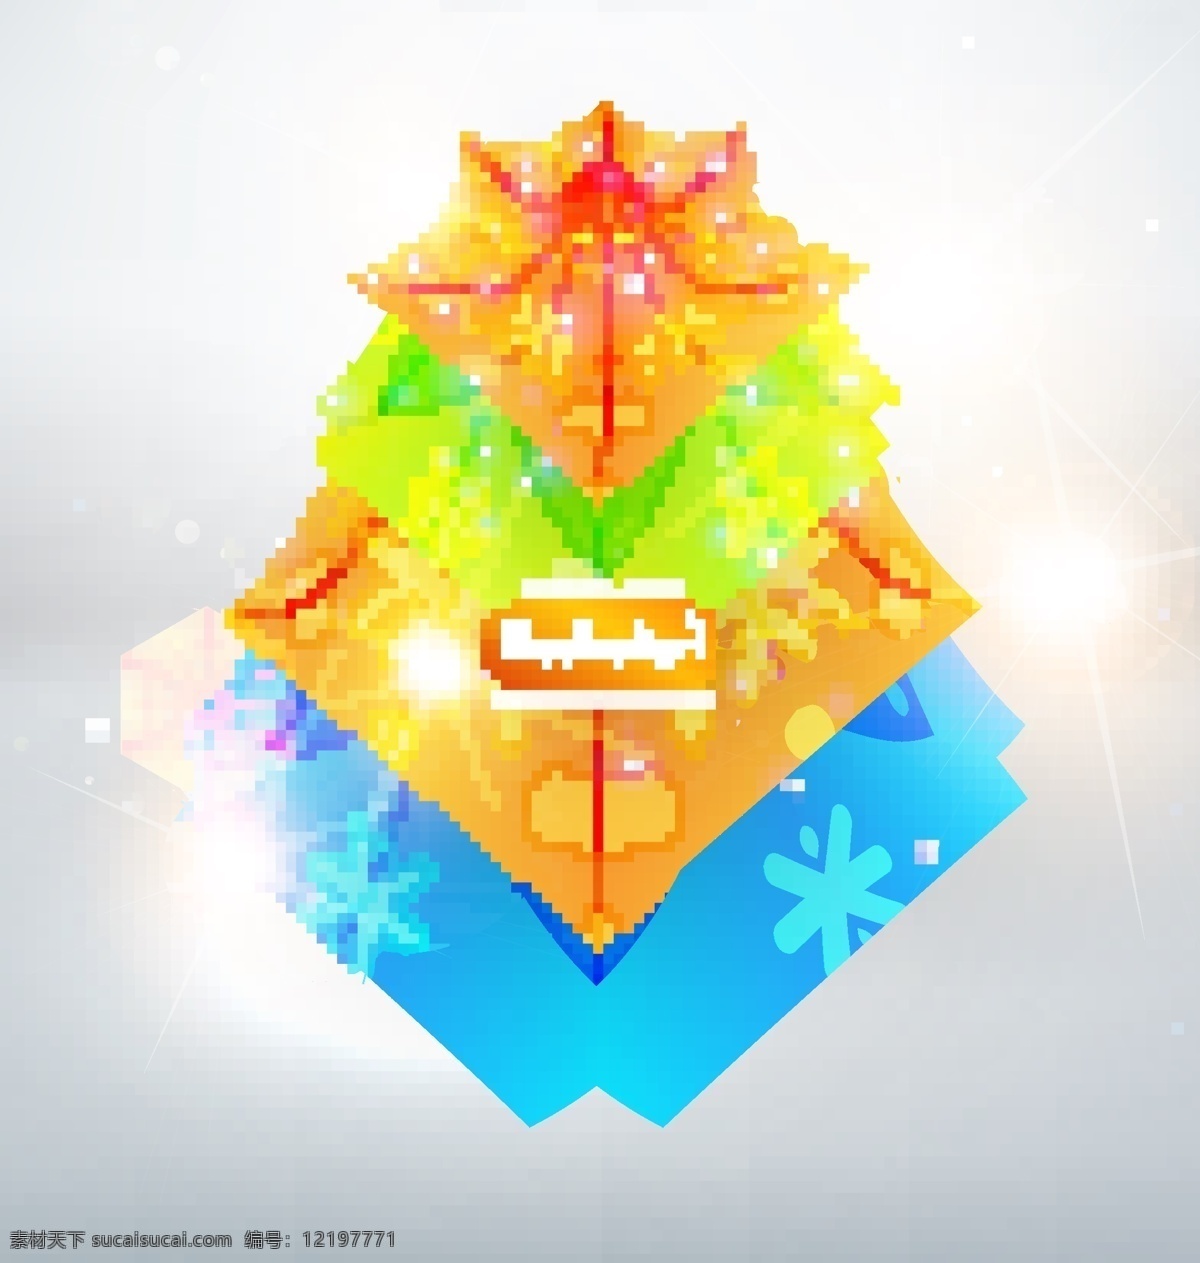 三角 图形 图案 圣诞 未来 背景 抽象背景 树 抽象 卡片 星星 圆圈 装饰品 几何 线条 三角形 墙纸 艺术 色彩 彩虹 雪花 形状